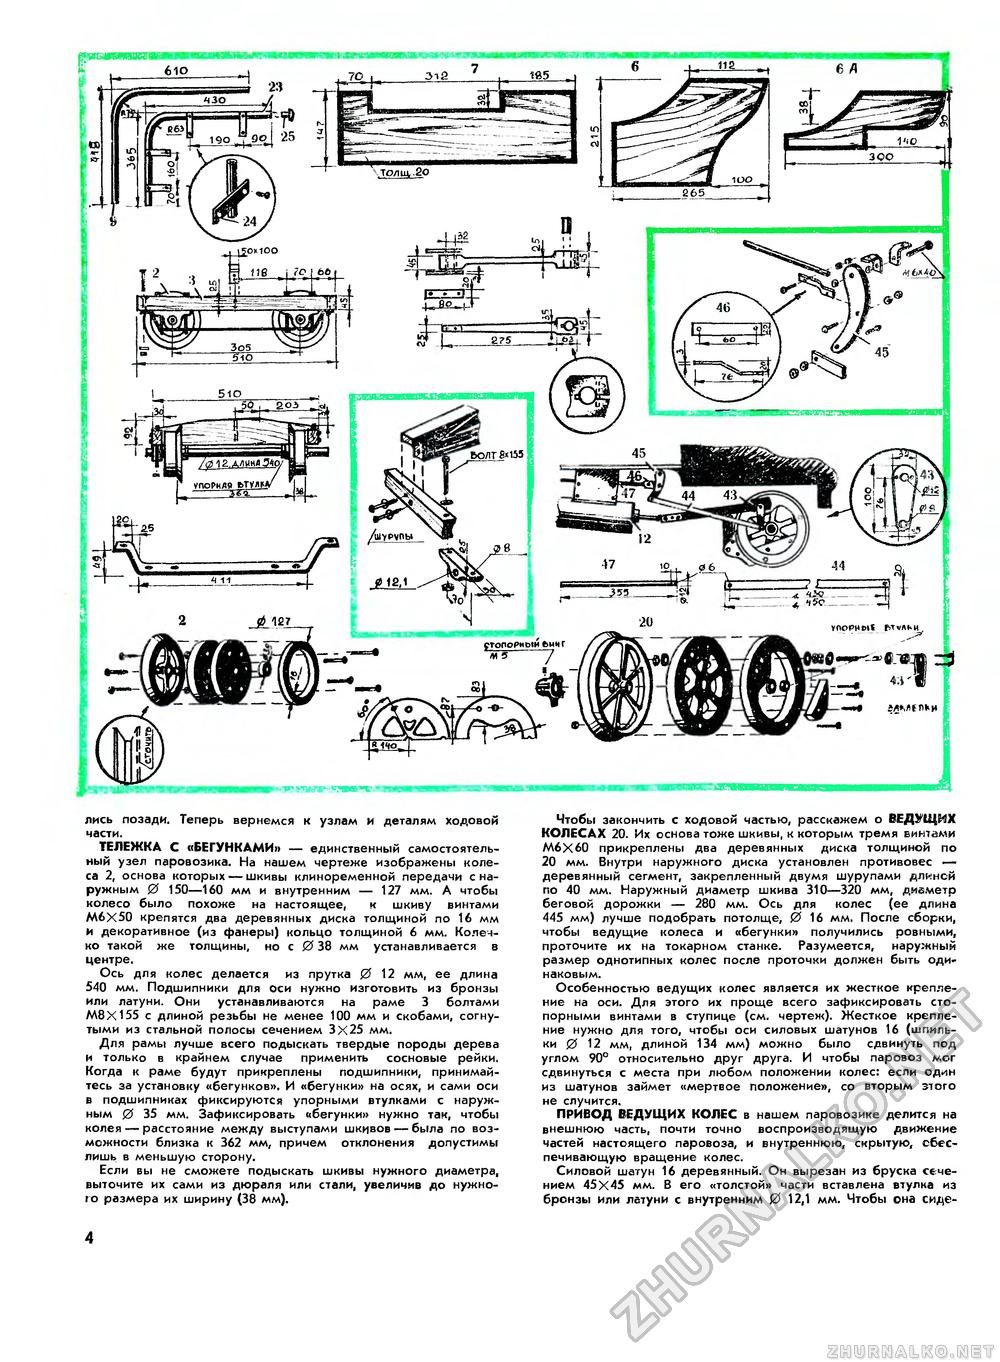 Юный техник - для умелых рук 1975-07, страница 4